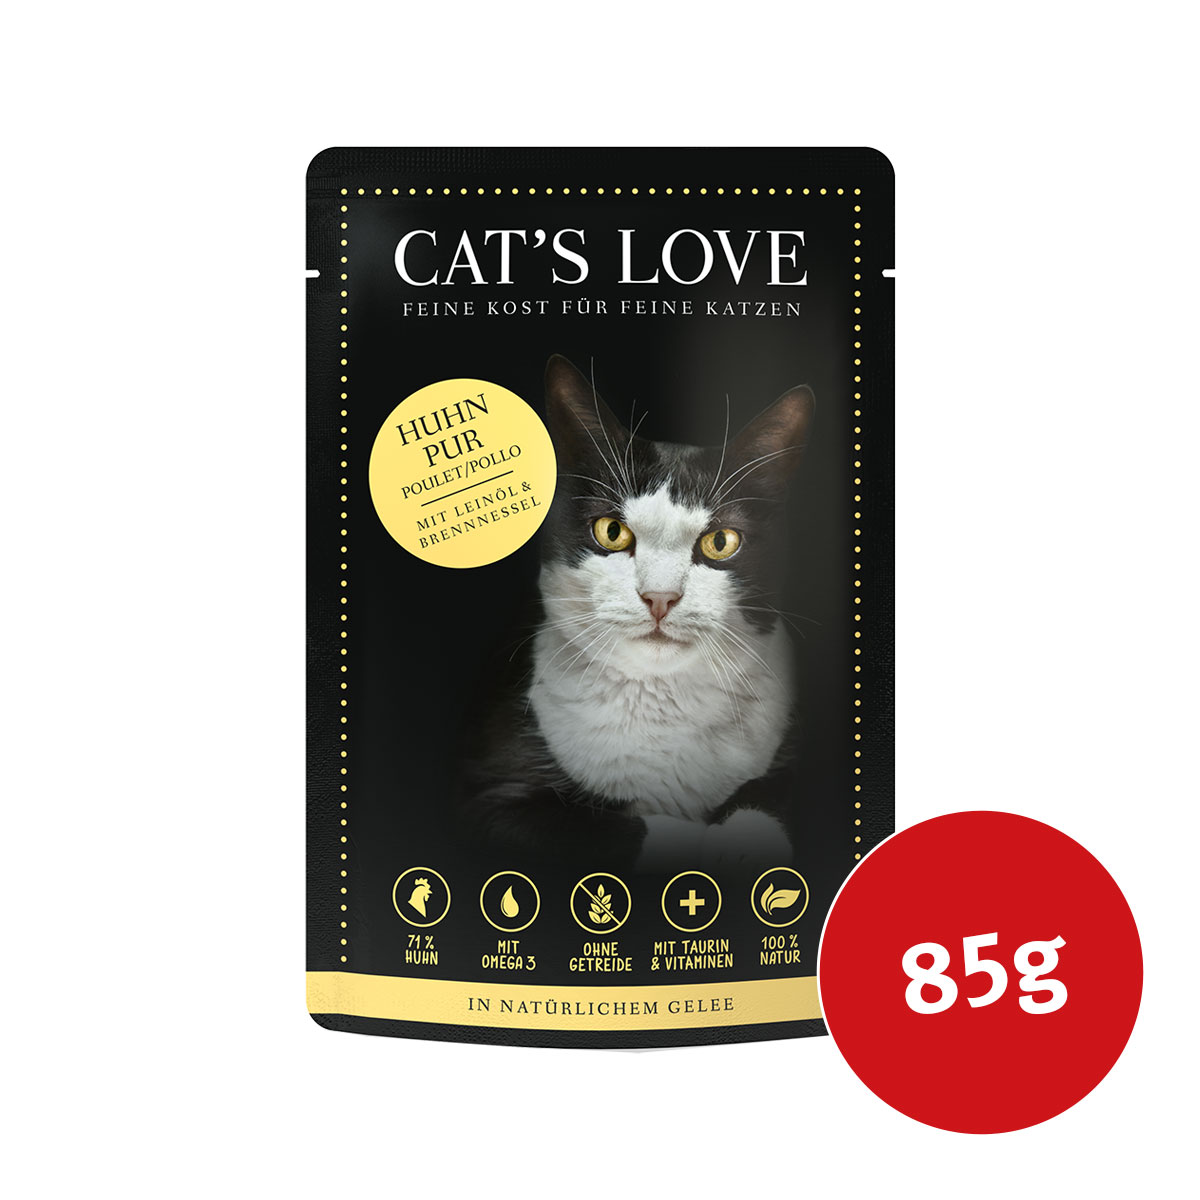 cats love huhn pur leinoel 85g